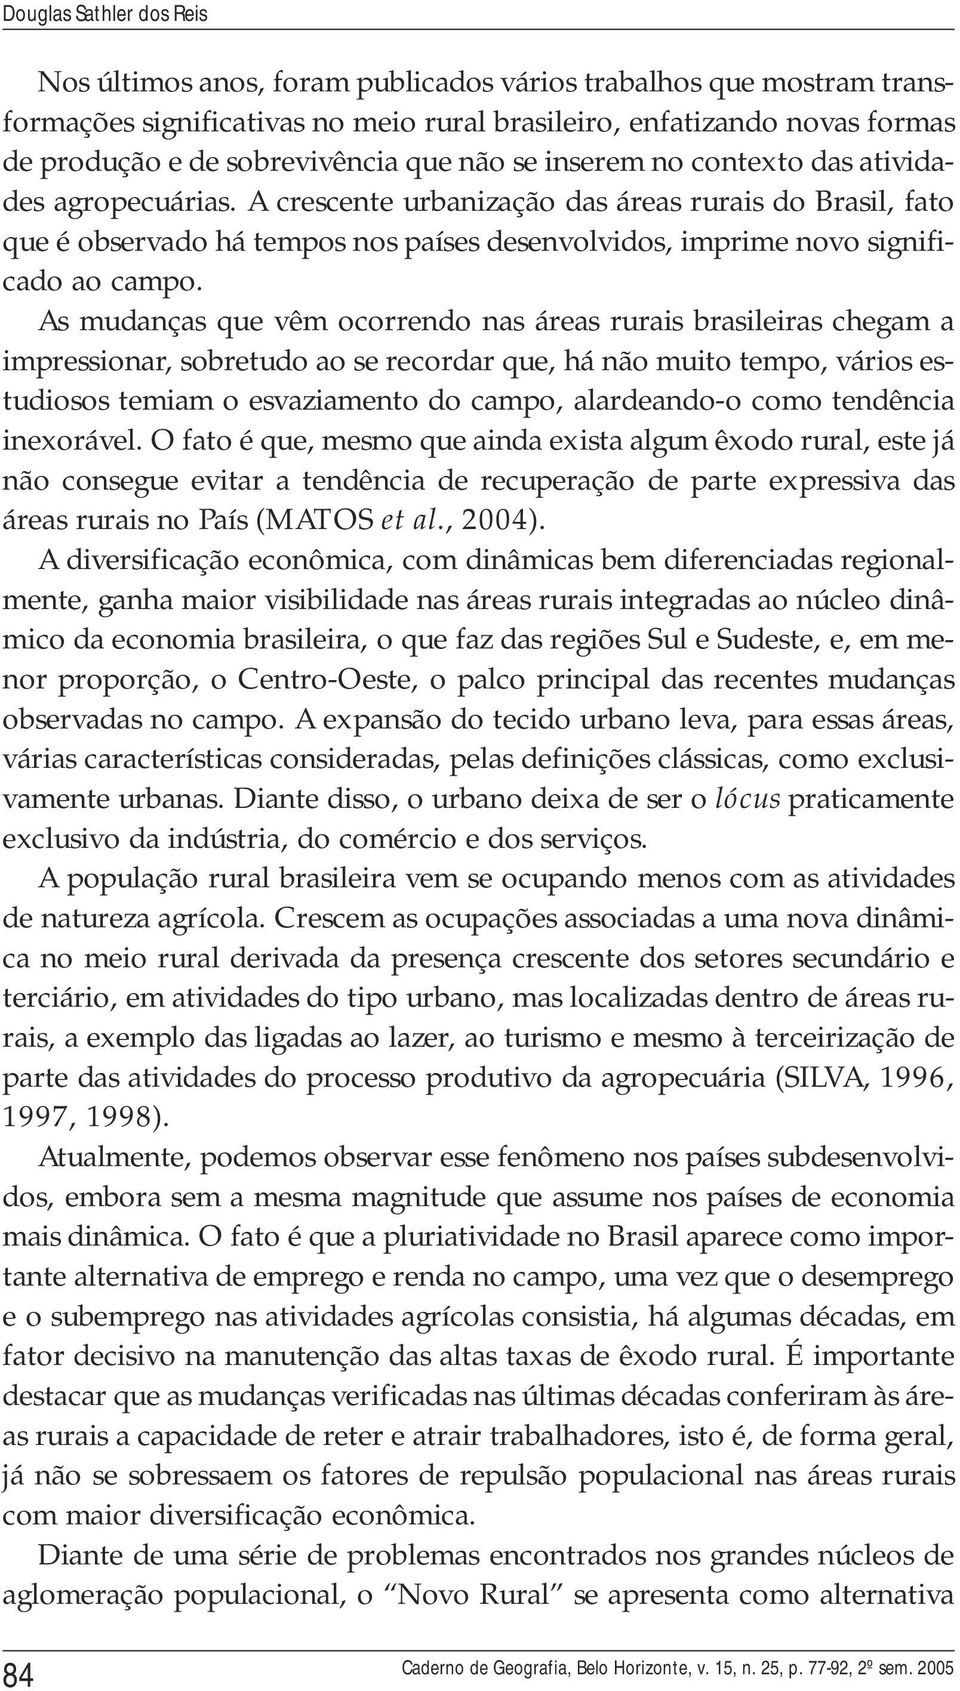 A crescente urbanização das áreas rurais do Brasil, fato que é observado há tempos nos países desenvolvidos, imprime novo significado ao campo.